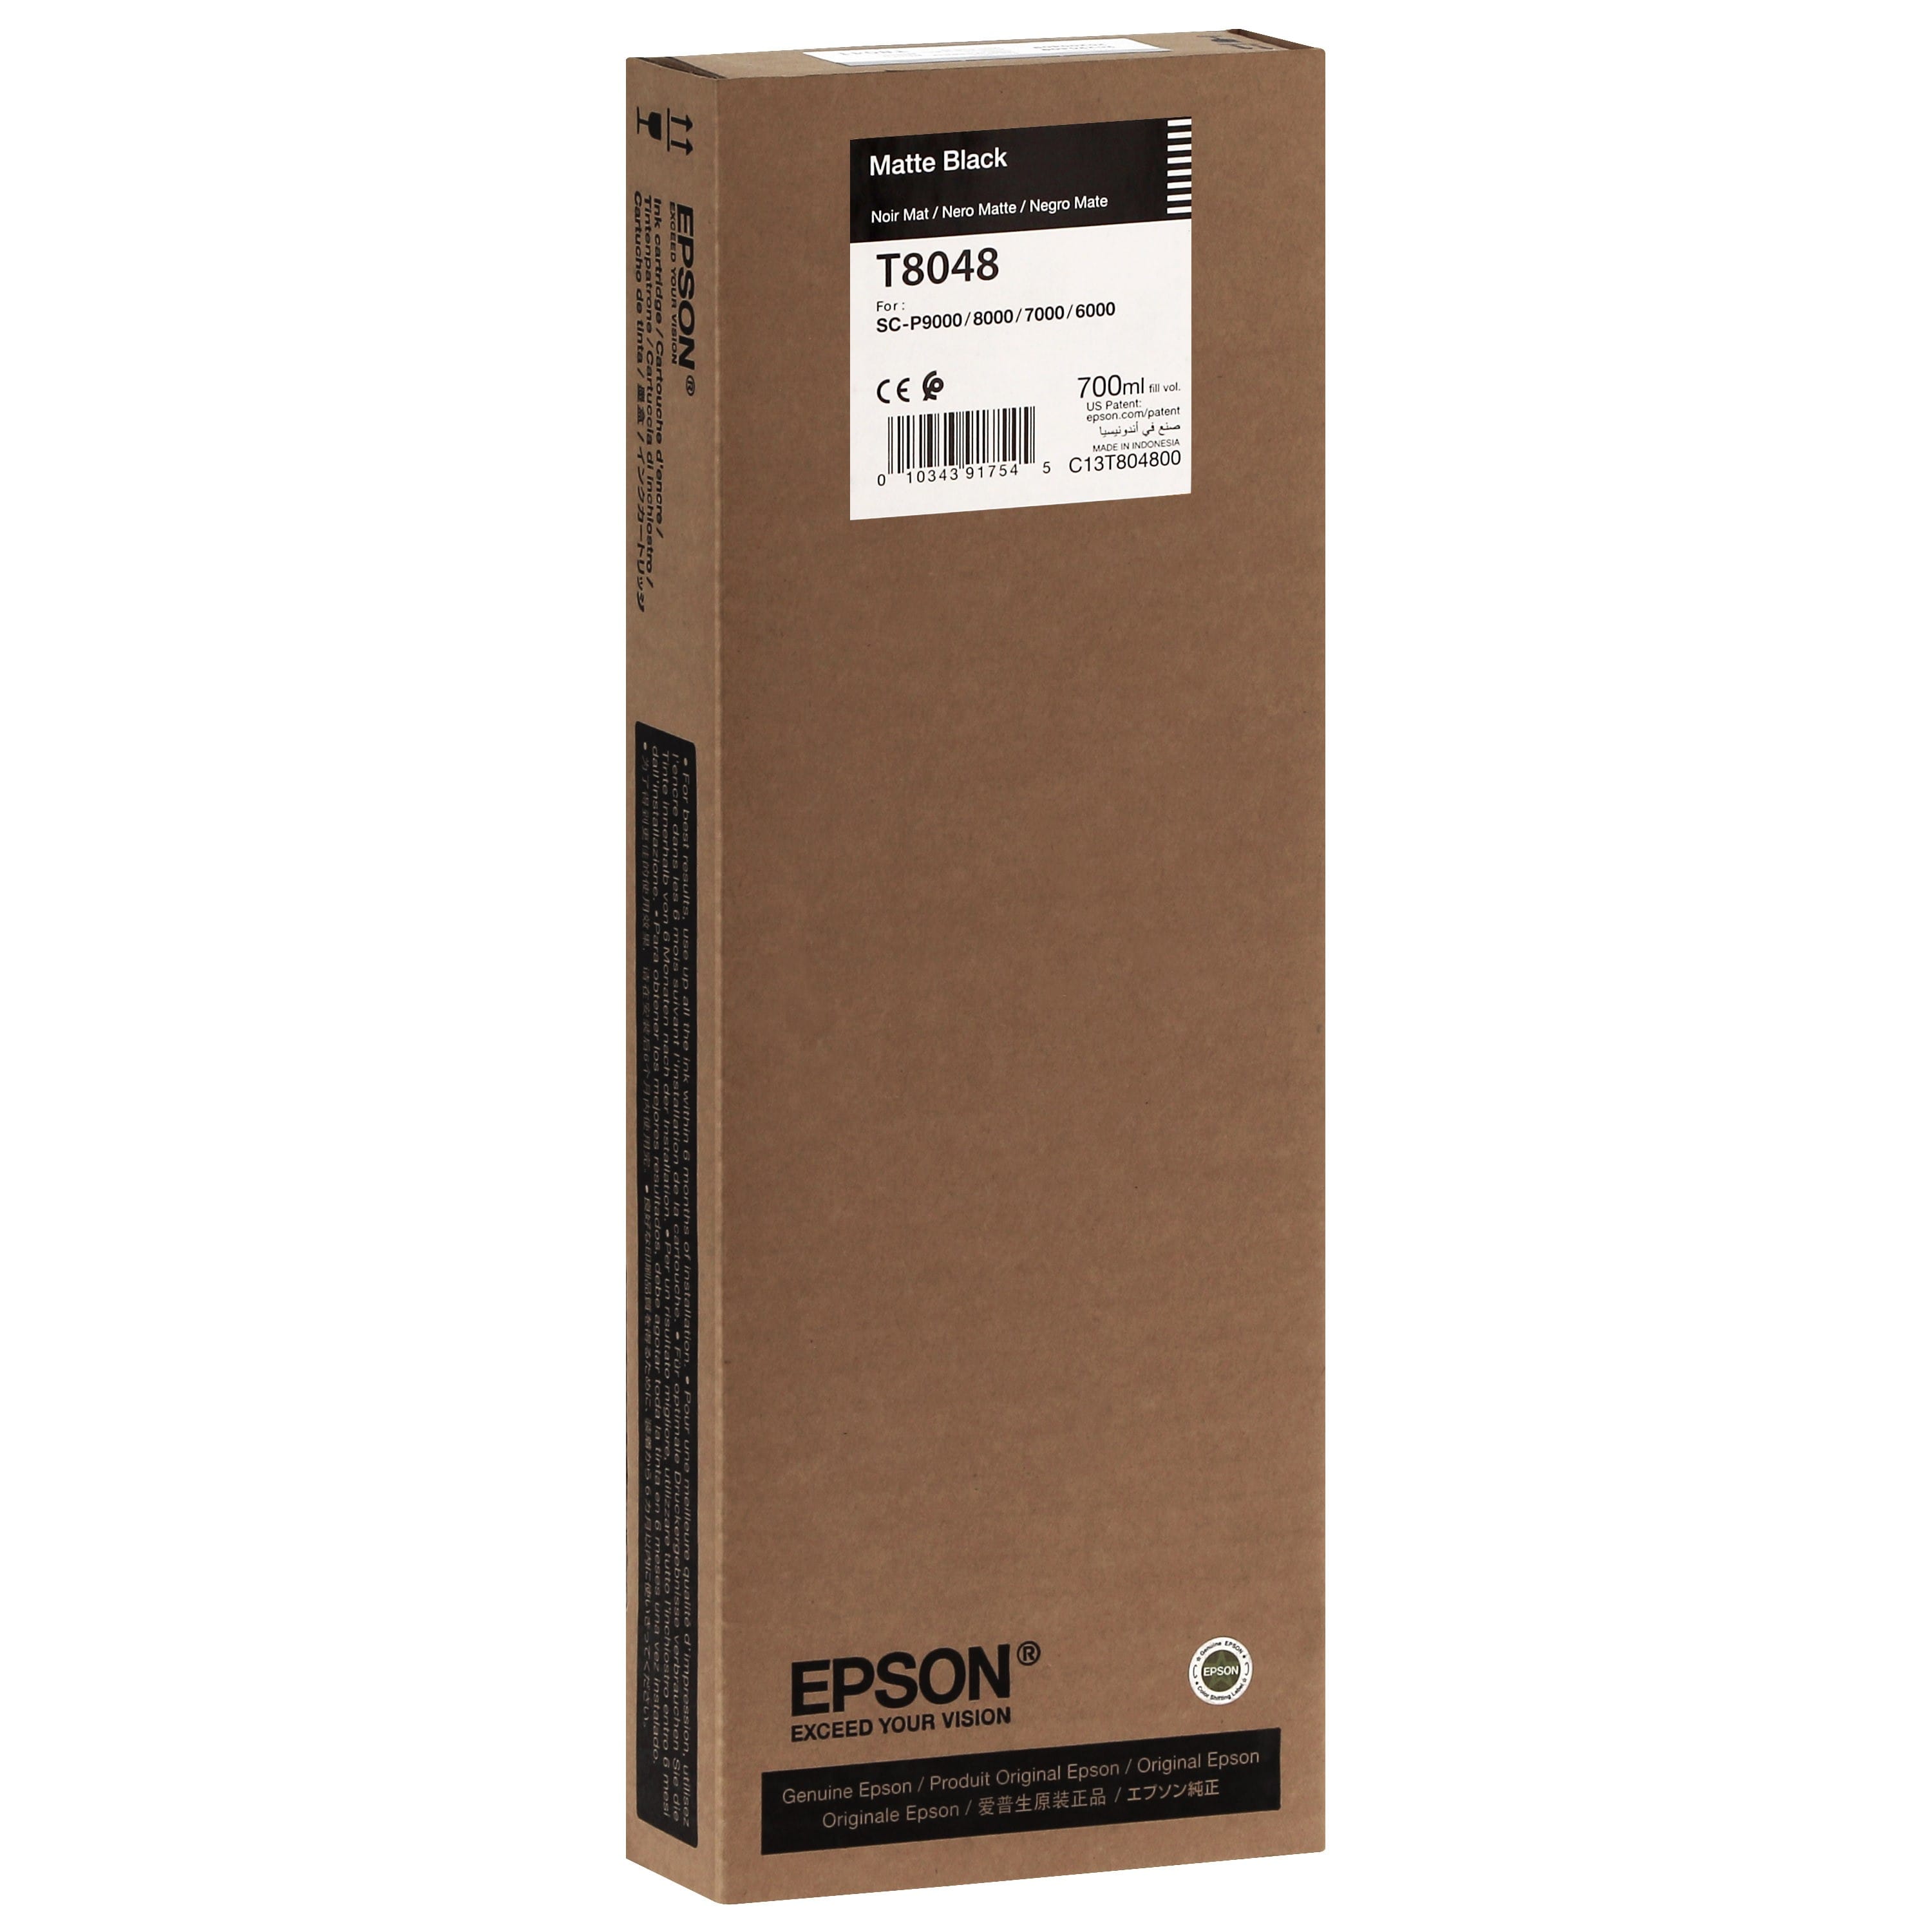 EPSON - Cartouche d'encre traceur T8048 Pour imprimante SC-P6000/7000/7000V/8000/9000/9000V Noir mat - 700ml